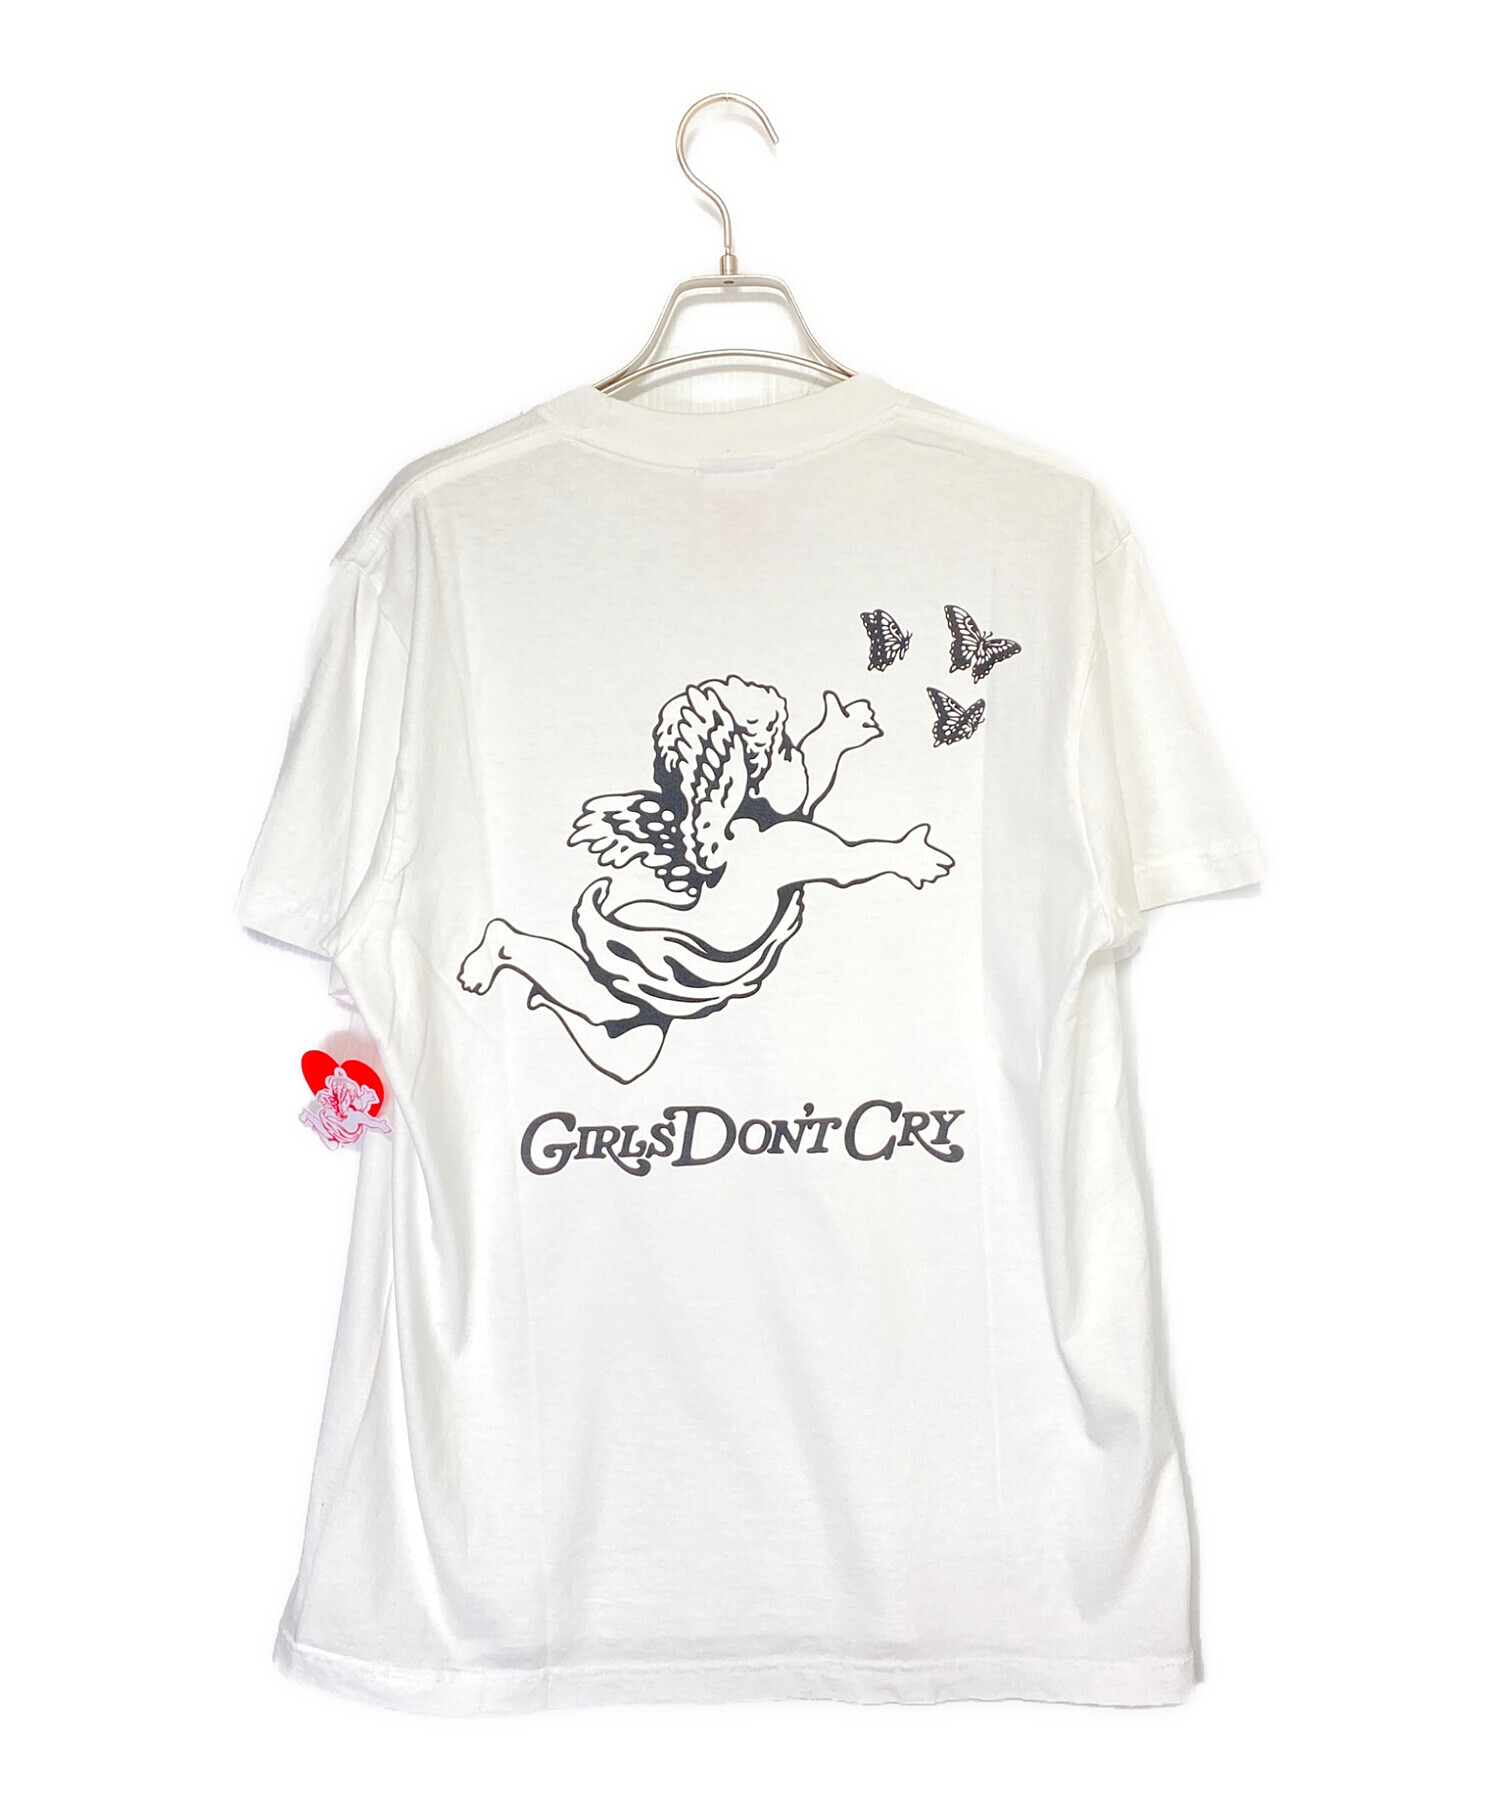 GIRLS DON'T CRY (ガールズドントクライ) ANGEL Tシャツ ホワイト サイズ:M 未使用品